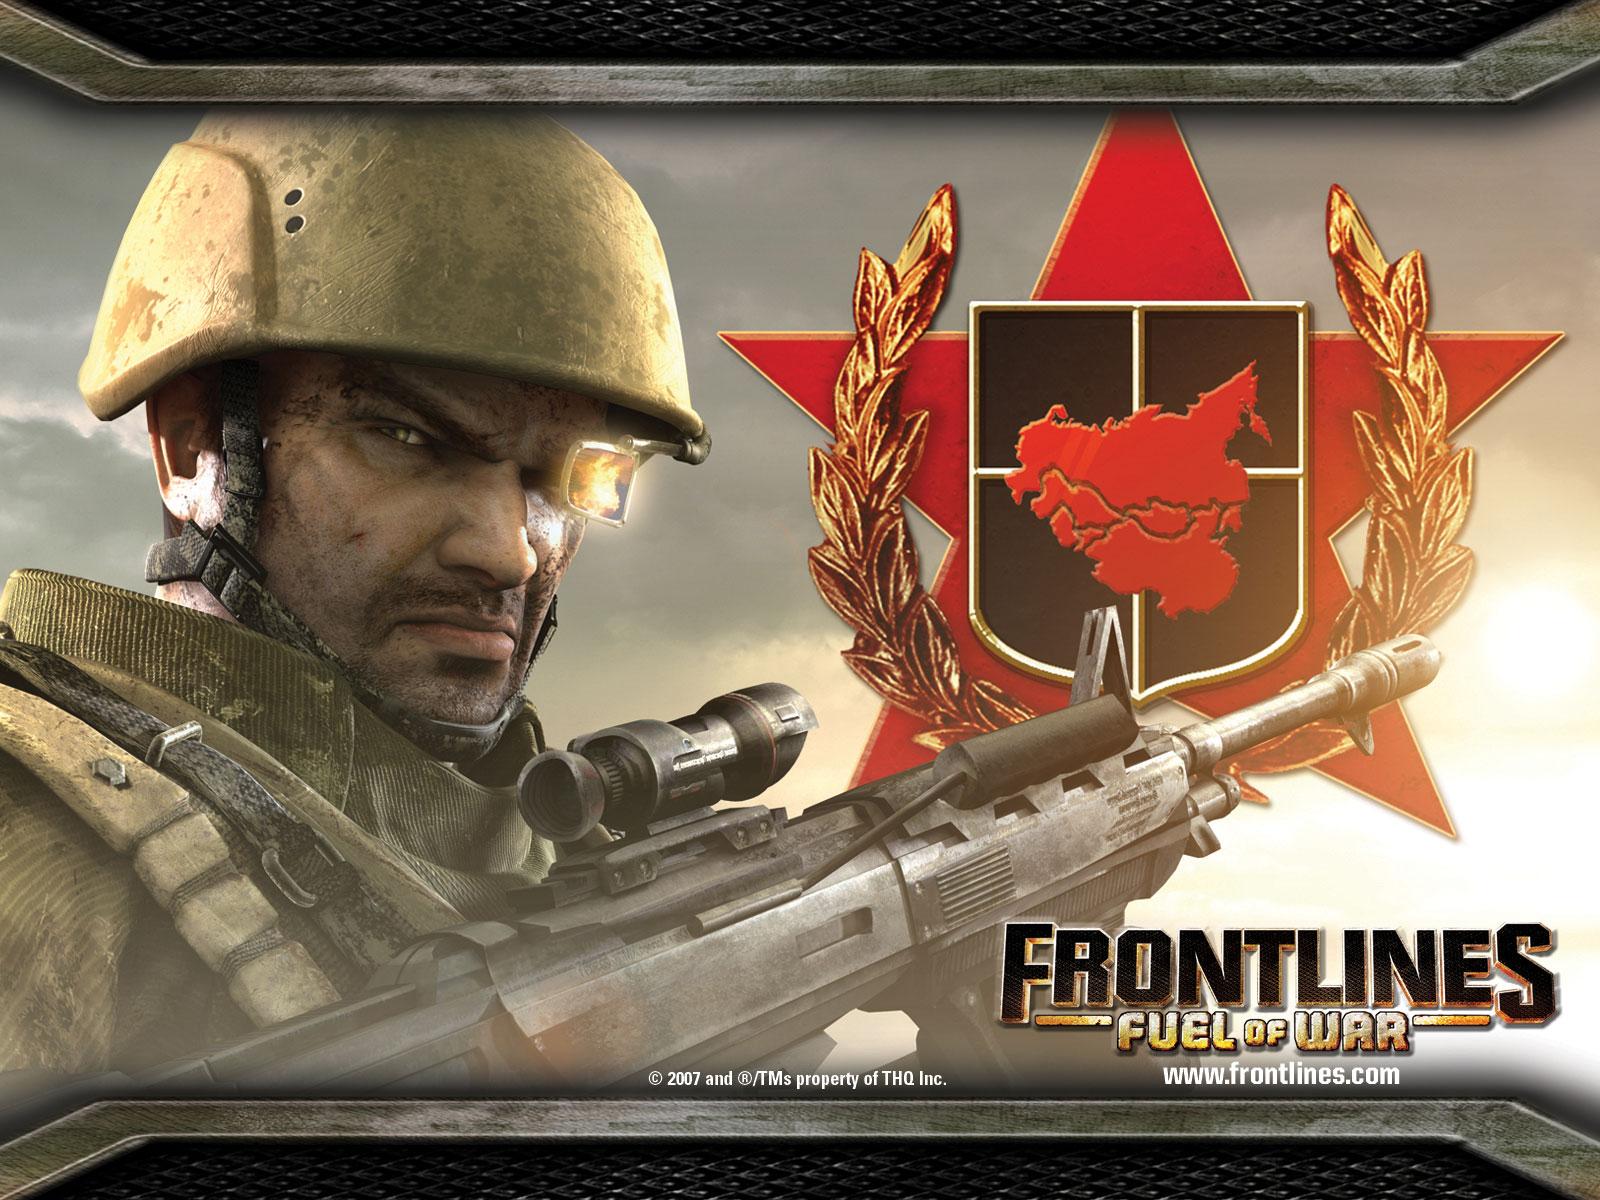 Frontlines Fuel of War Free Download